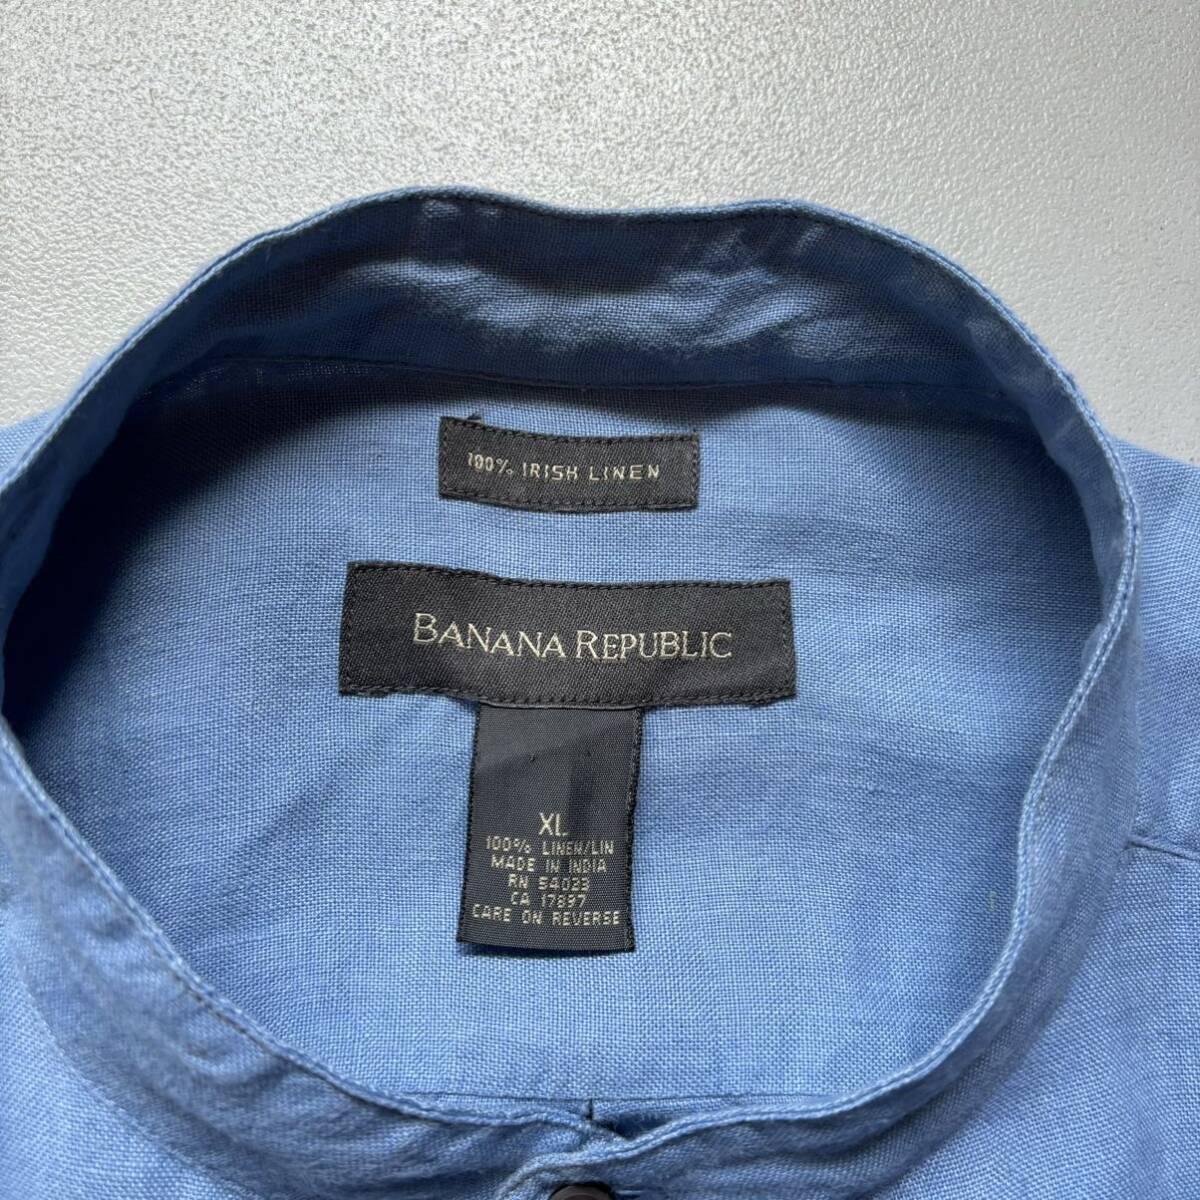 Banana Republic Irish linen L/S shirt “size XL” バナナリパブリック アイリッシュリネンシャツ 長袖シャツ_画像8